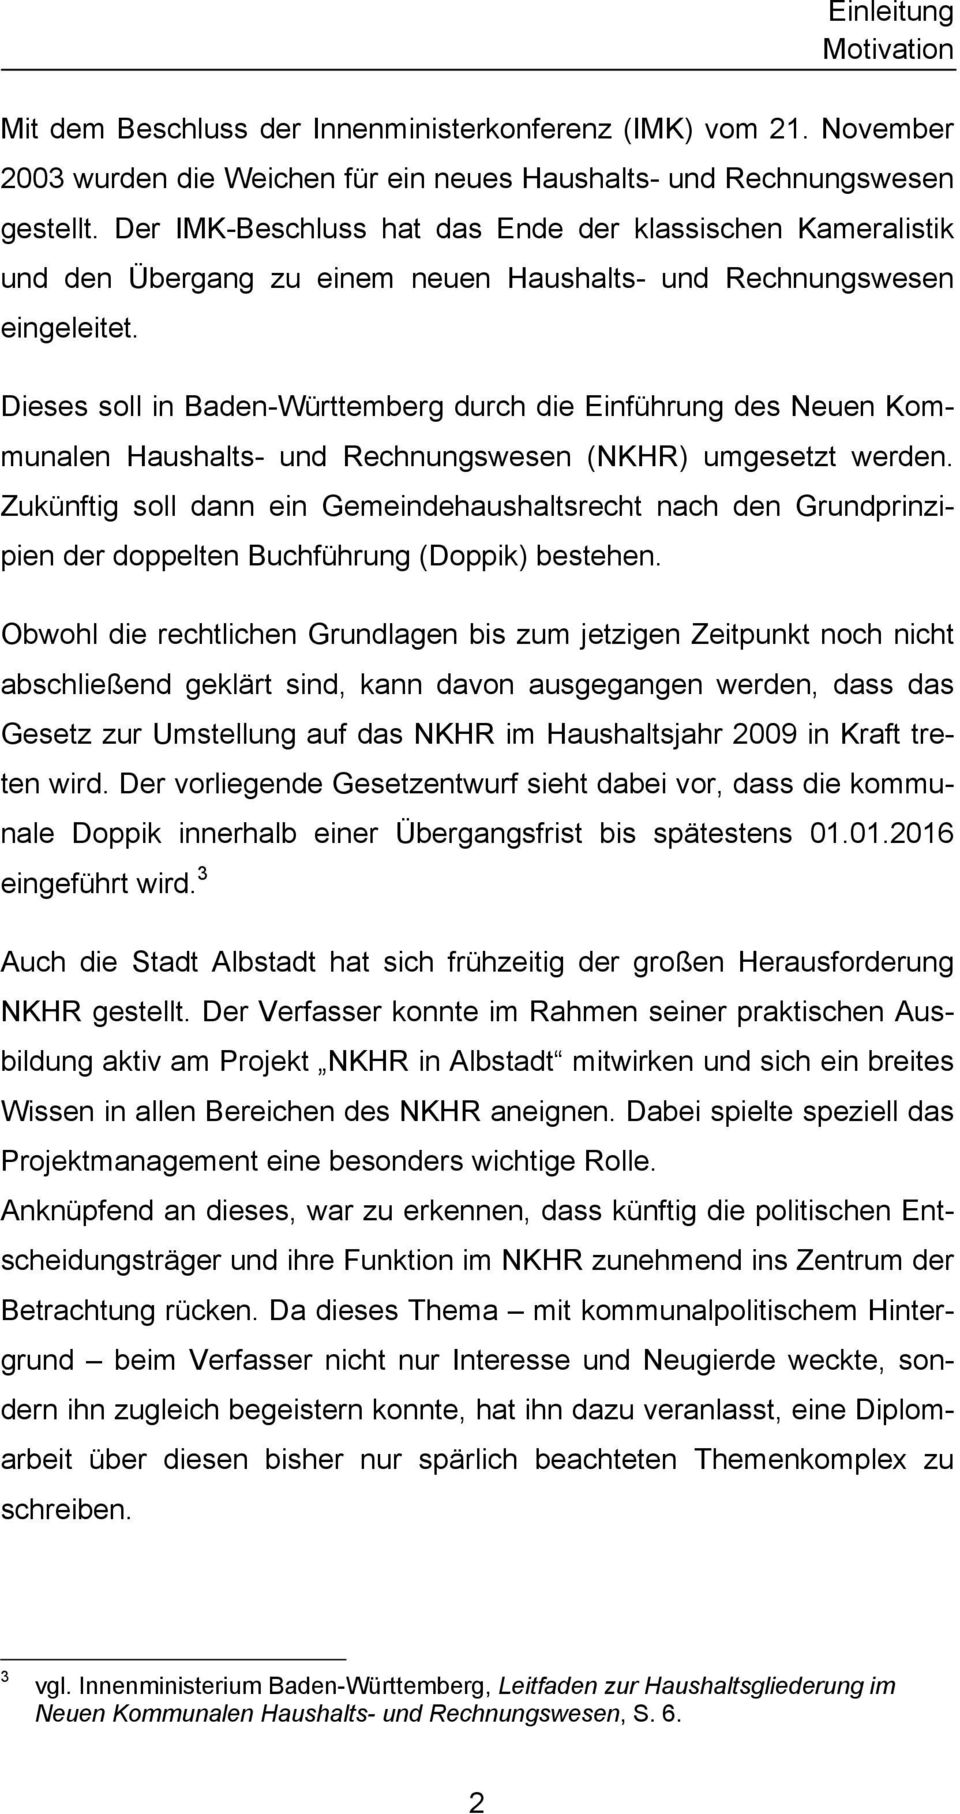 Dieses soll in Baden-Württemberg durch die Einführung des Neuen Kommunalen Haushalts- und Rechnungswesen (NKHR) umgesetzt werden.